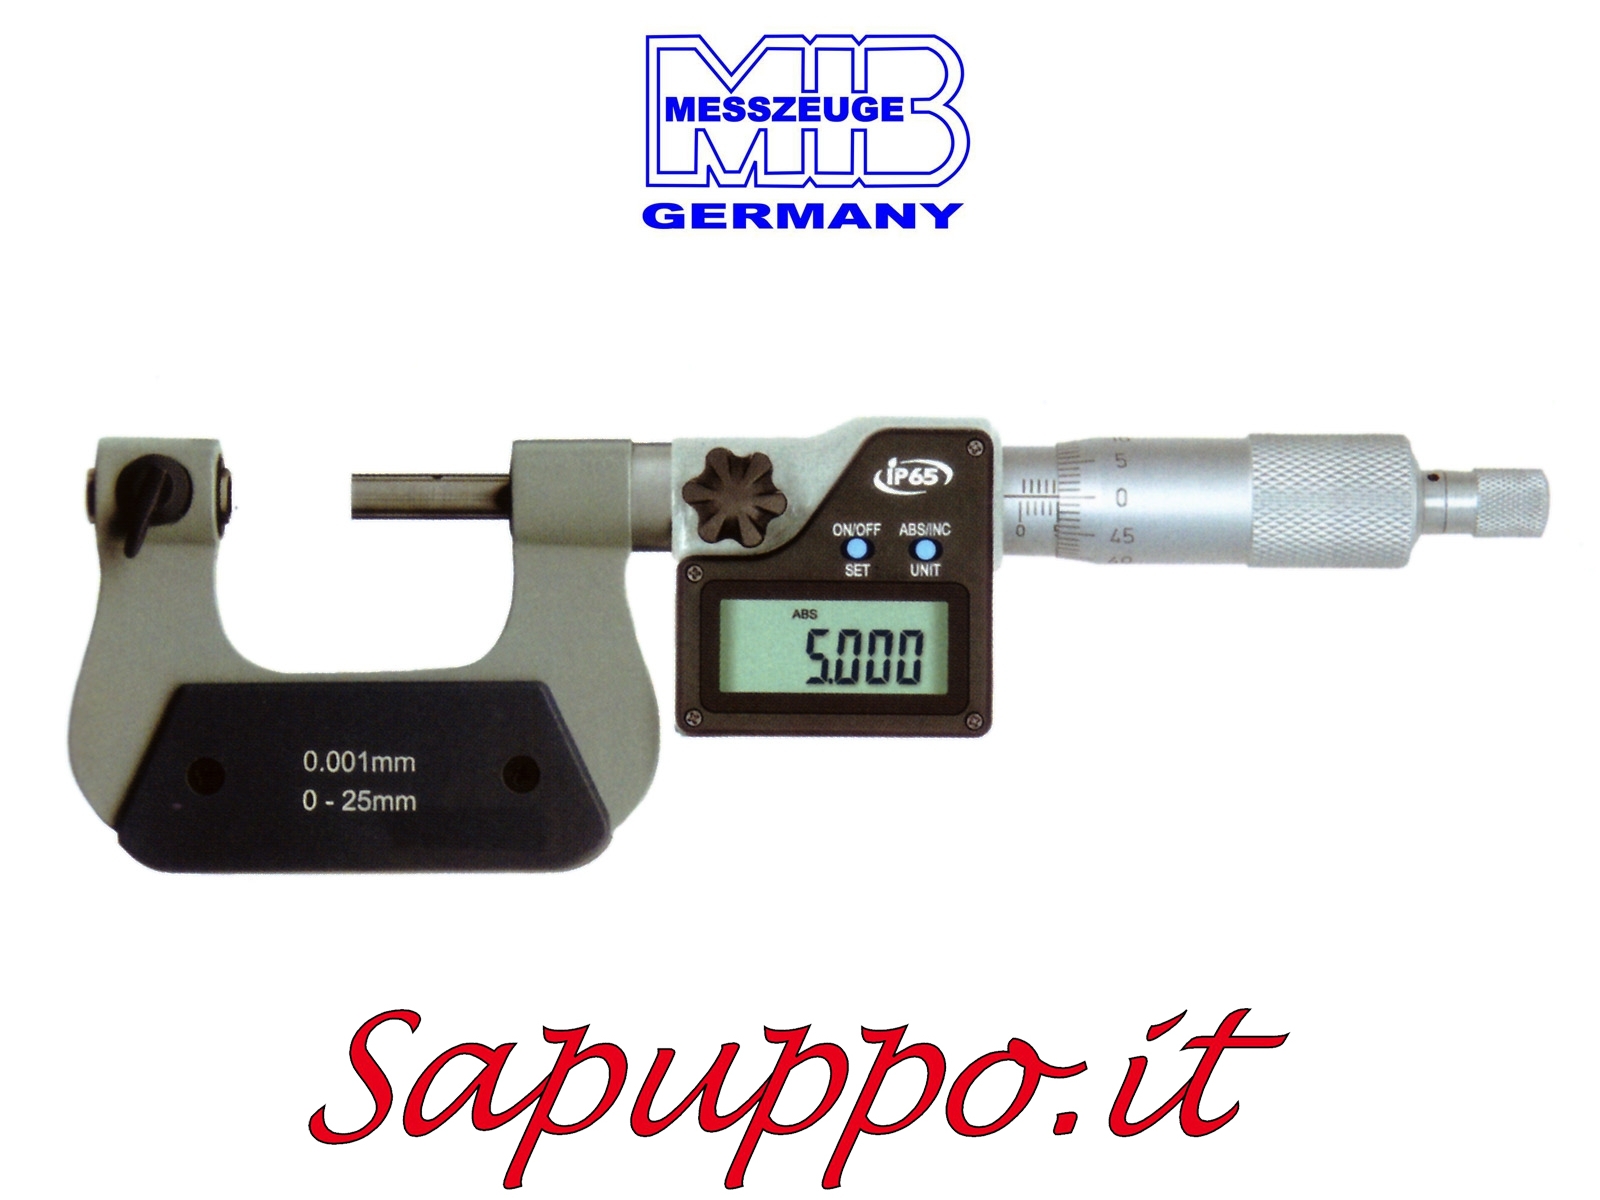 Vendita online Micrometro universale con inserti intercambiabili asta di misurazione non rotante diam. 6,5 mm digitale MIB M 125